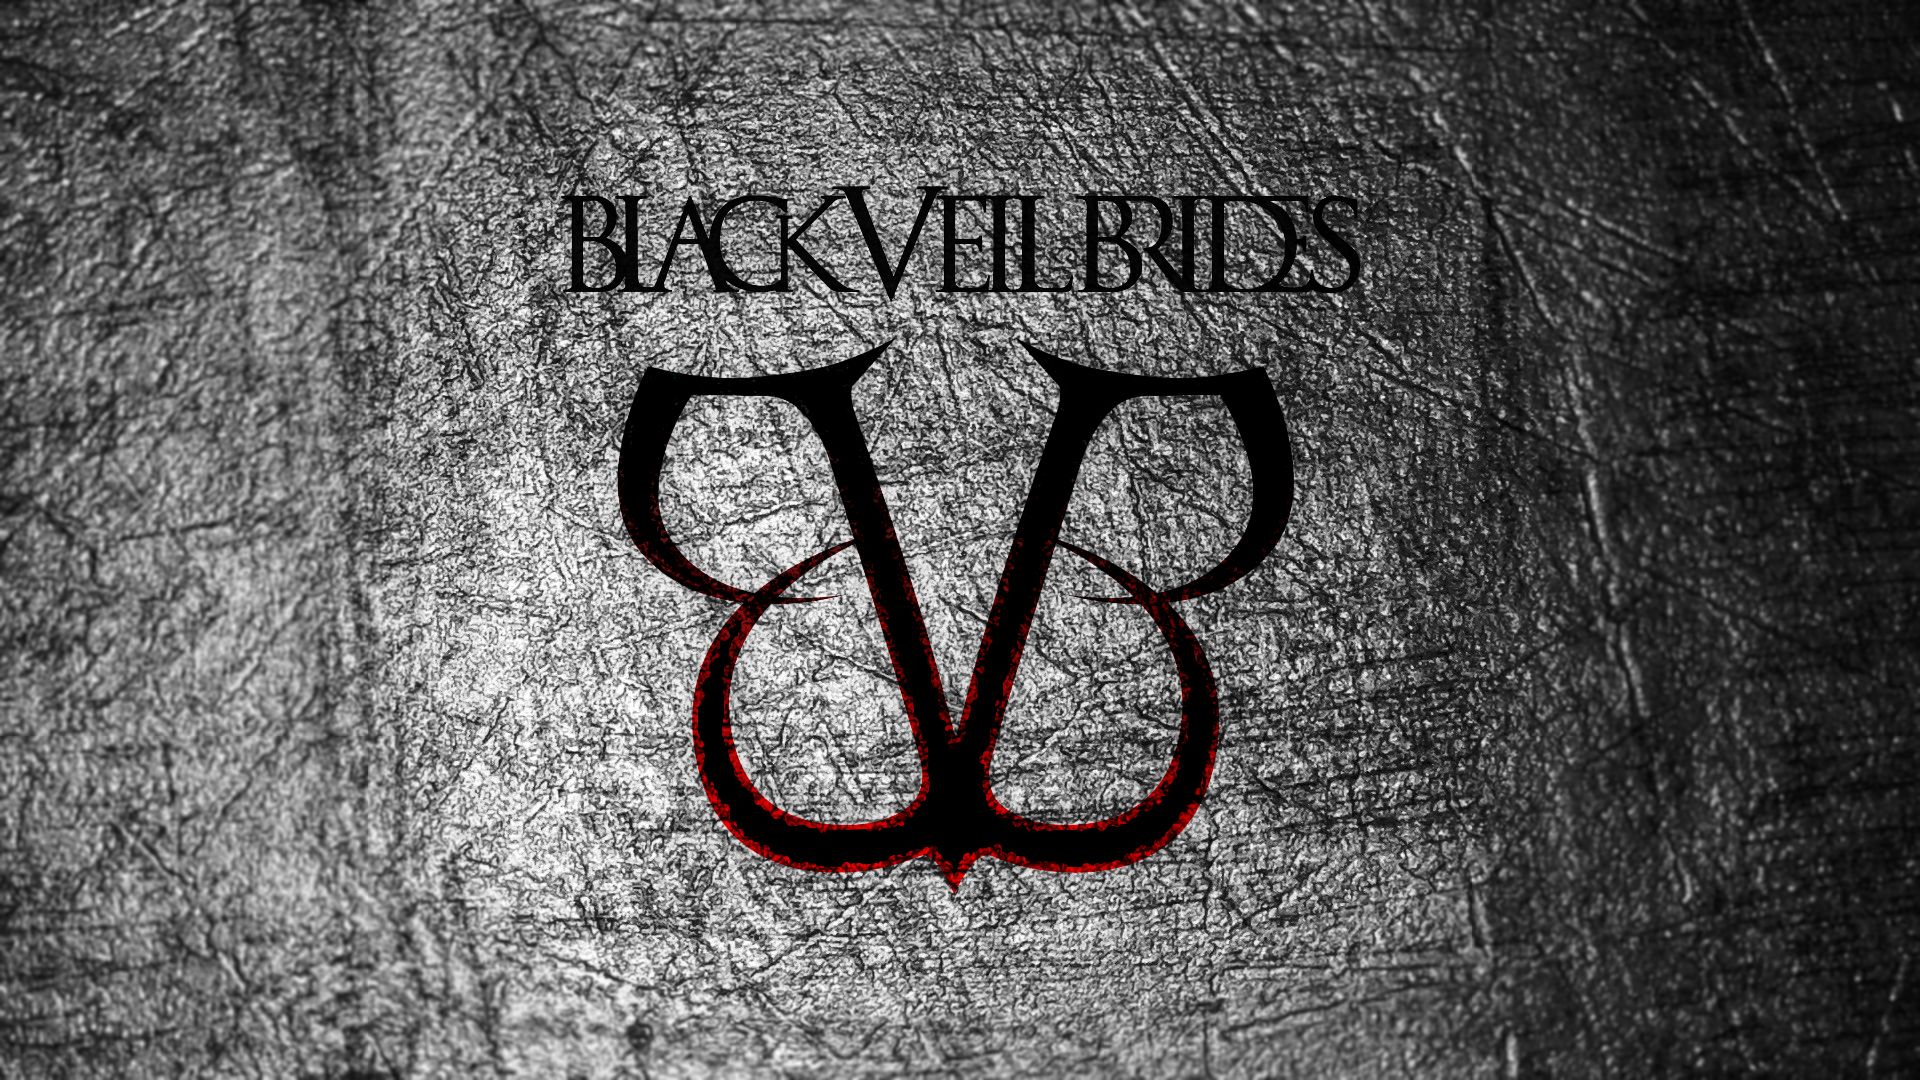 Black Veil Brides 1080p Background Picture Image